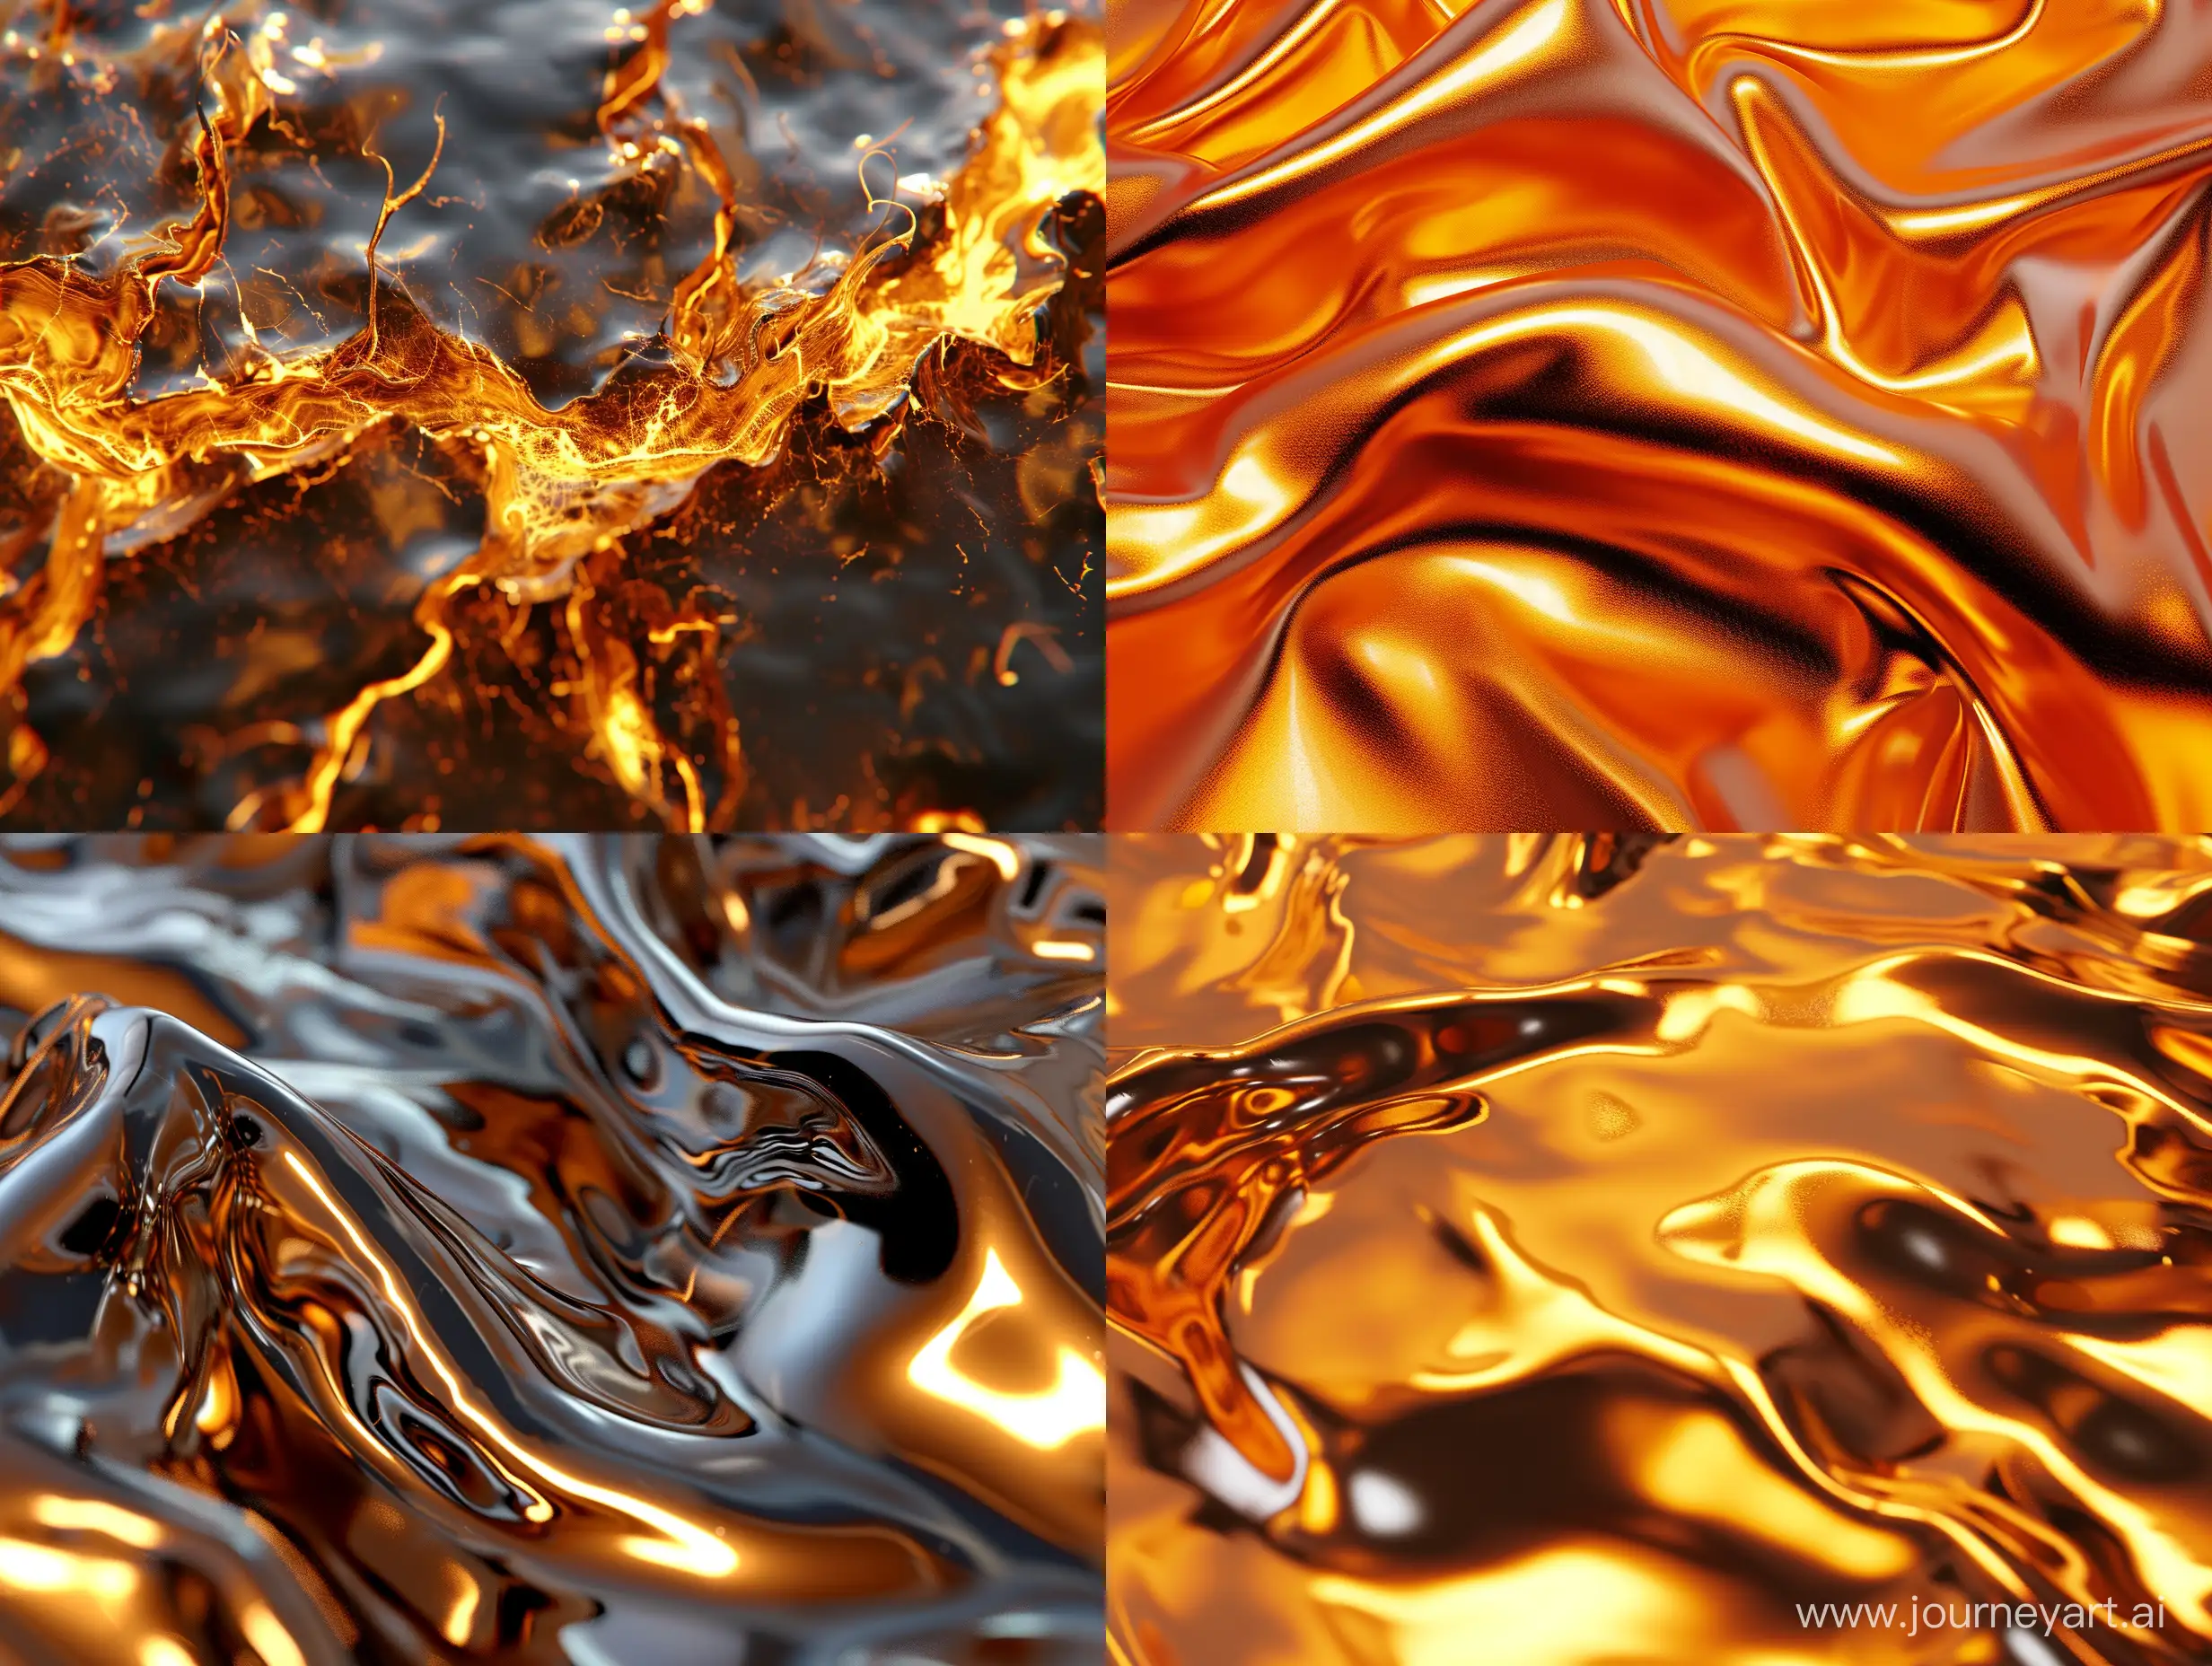 Hot, molten 3D metallic strictly titled as "ANGRAMO GFX"